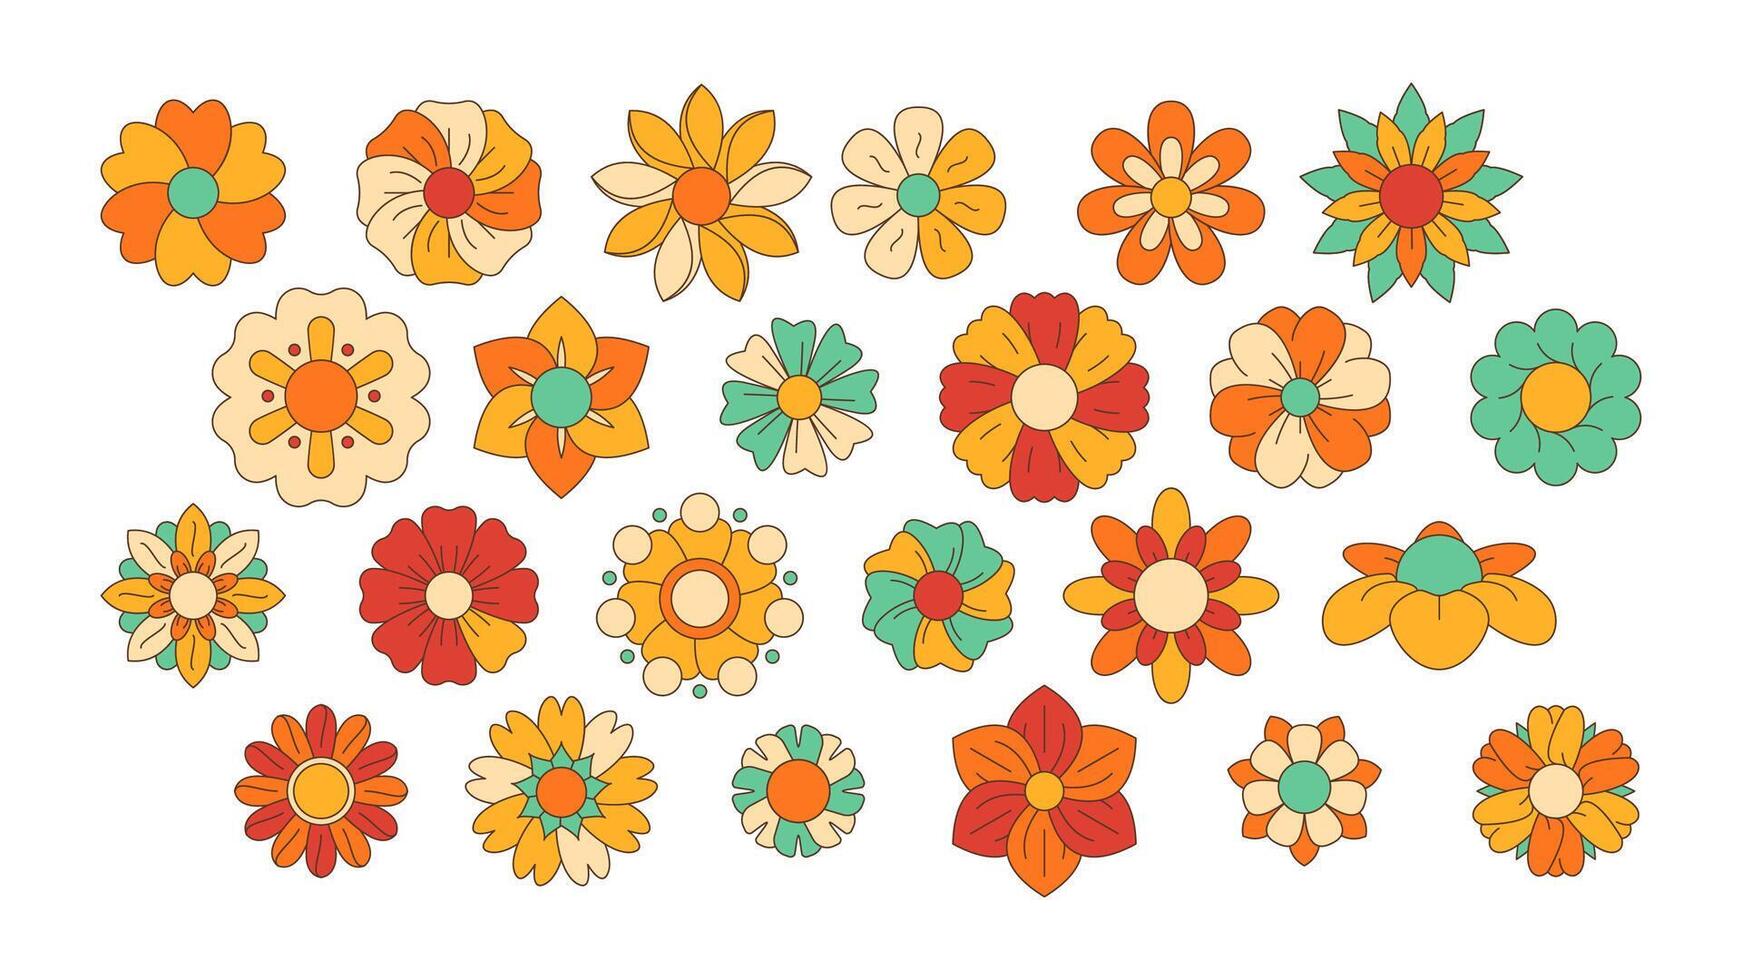 linjär hippie blommor. klotter häftig blomma ikoner, sextiotalet blomma kraft symboler, abstrakt översikt färgrik blomma symboler. vektor samling